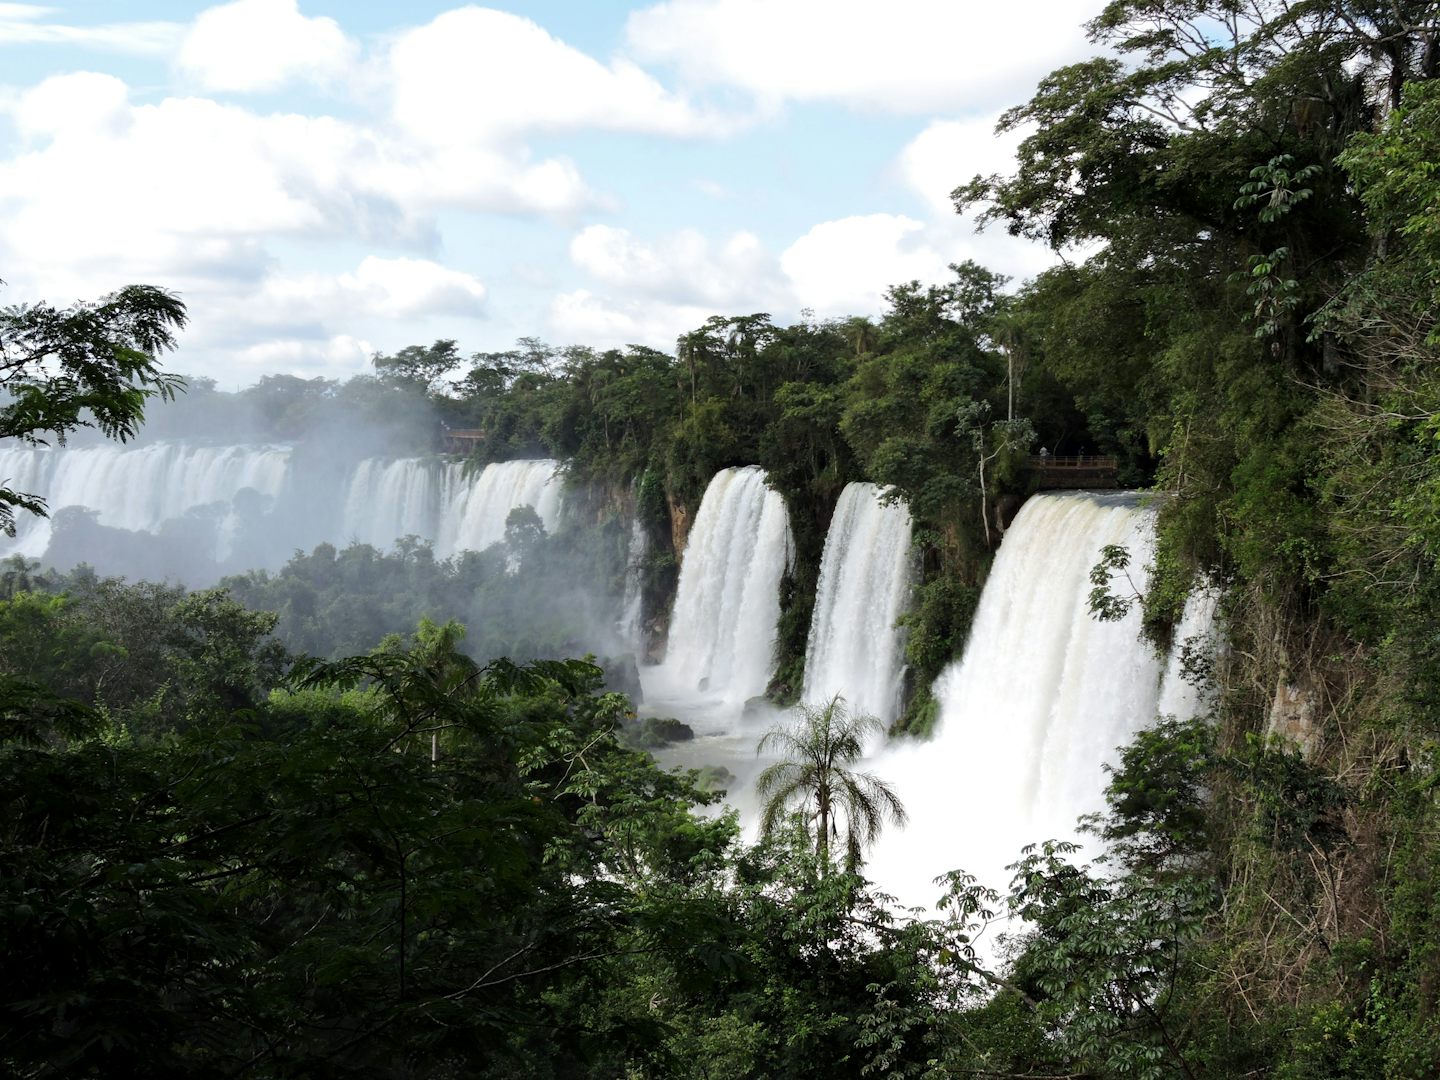 The beautiful Iguazzu Falls, pre-cruise.